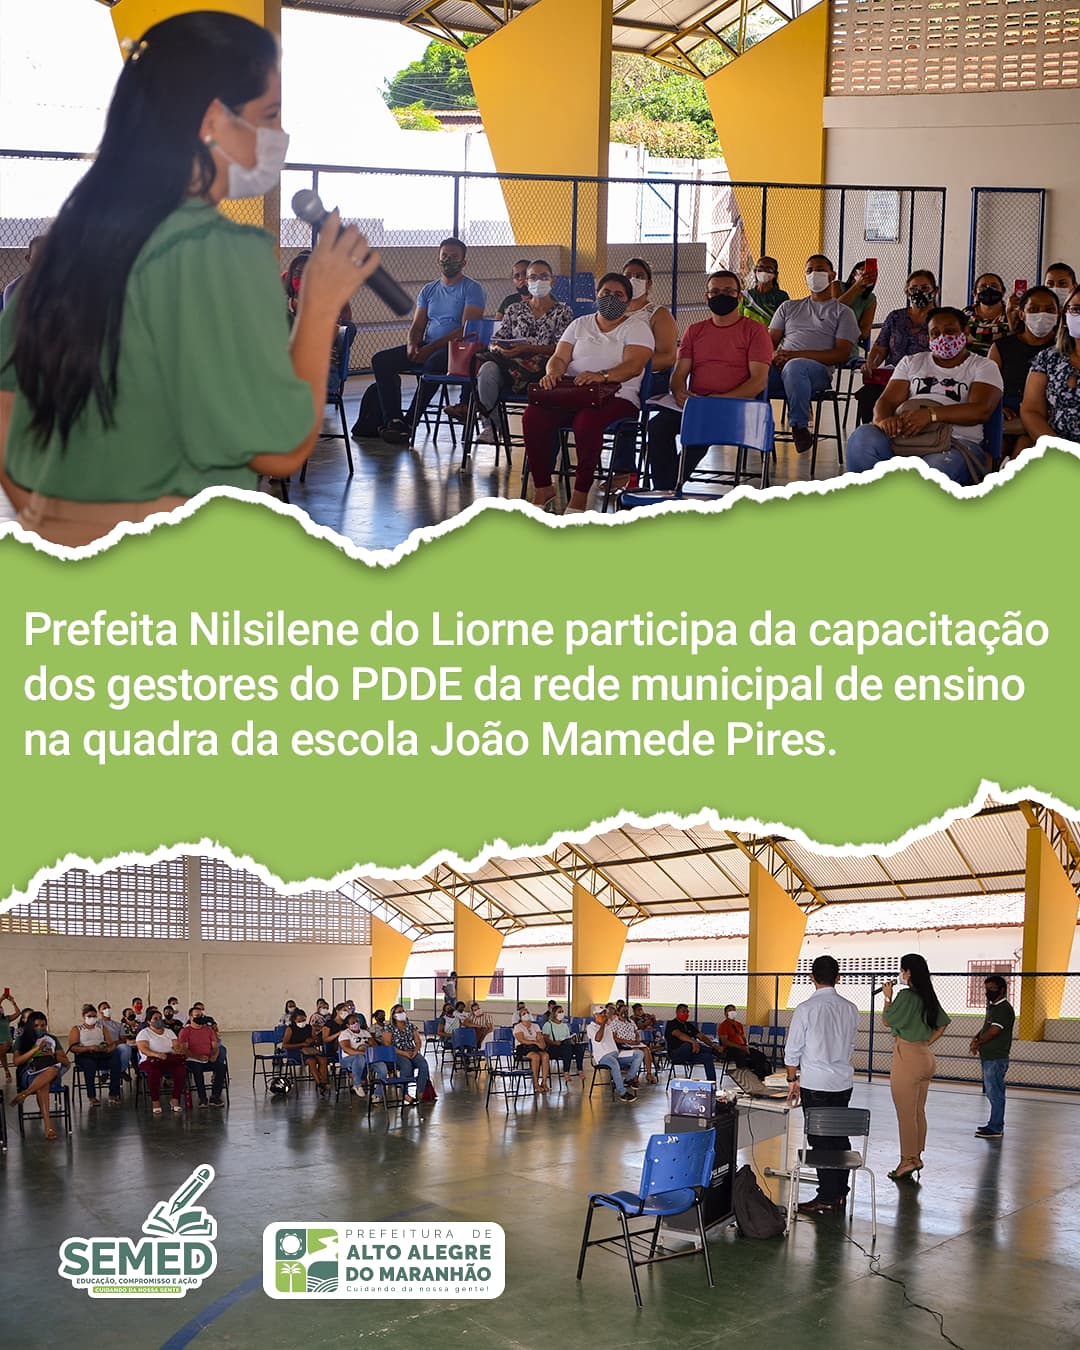 Investimento e valorização nos servidores públicos de Alto Alegre do Maranhão